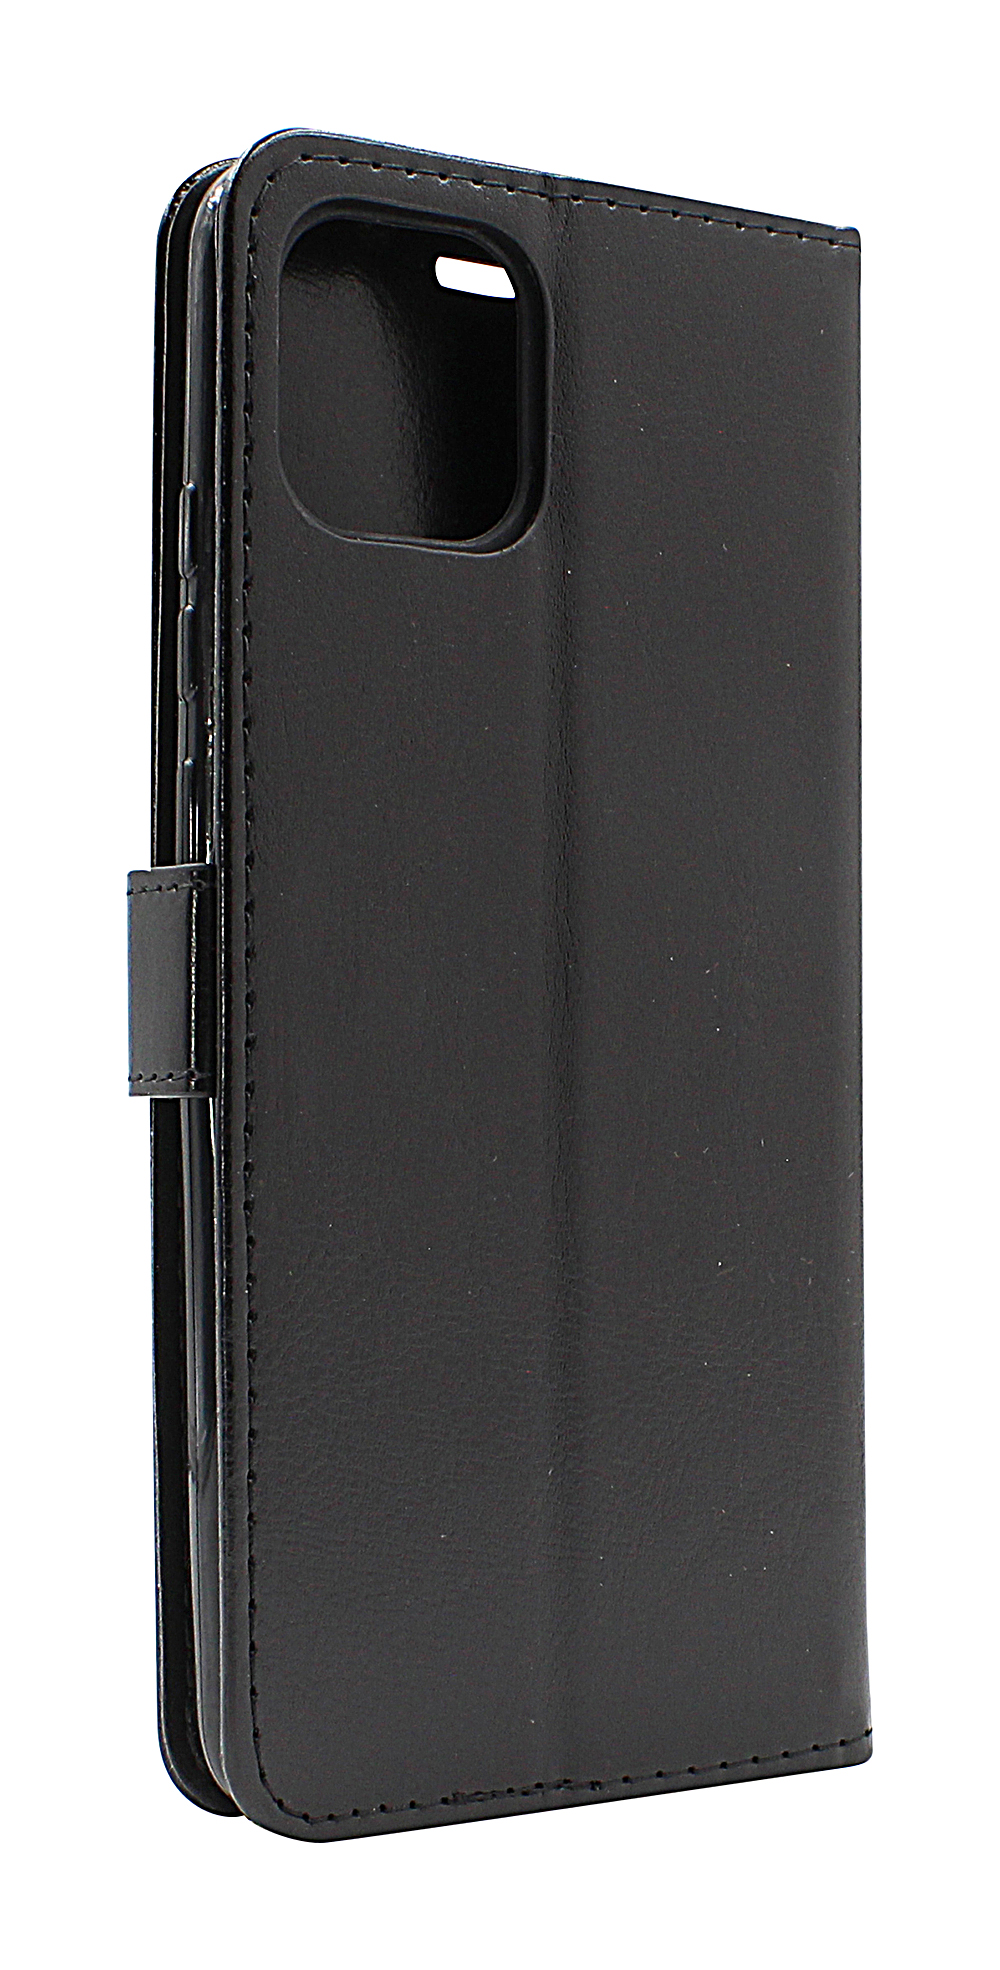 Crazy Horse Wallet Samsung Galaxy A03 (A035G/DS)